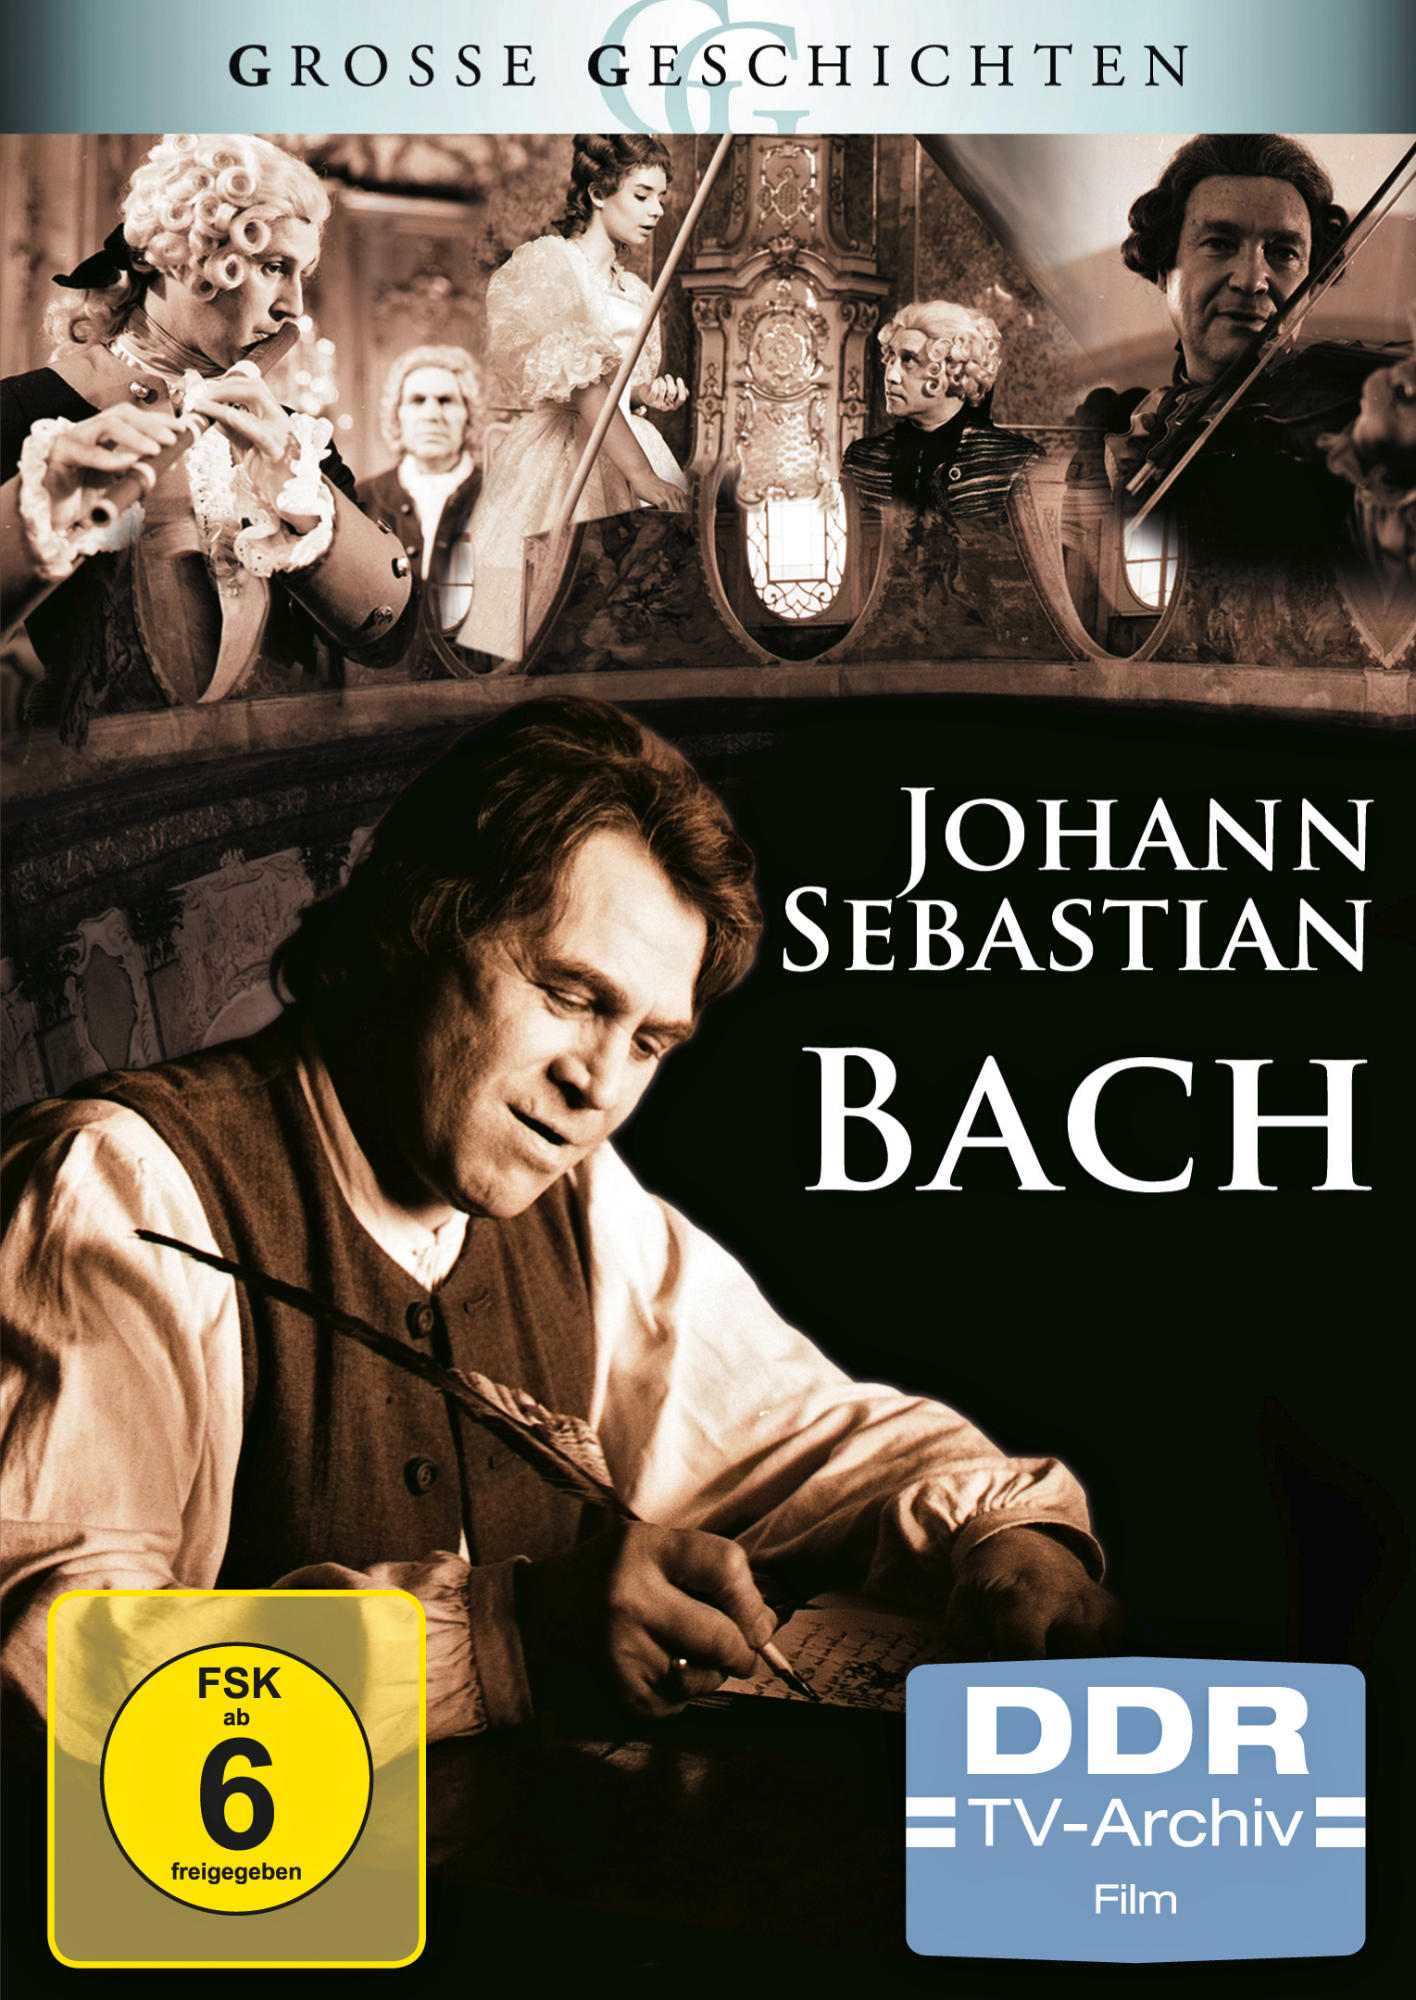 JOHANN SEBASTIAN BACH (GROSSE DVD GESCHICHTEN)